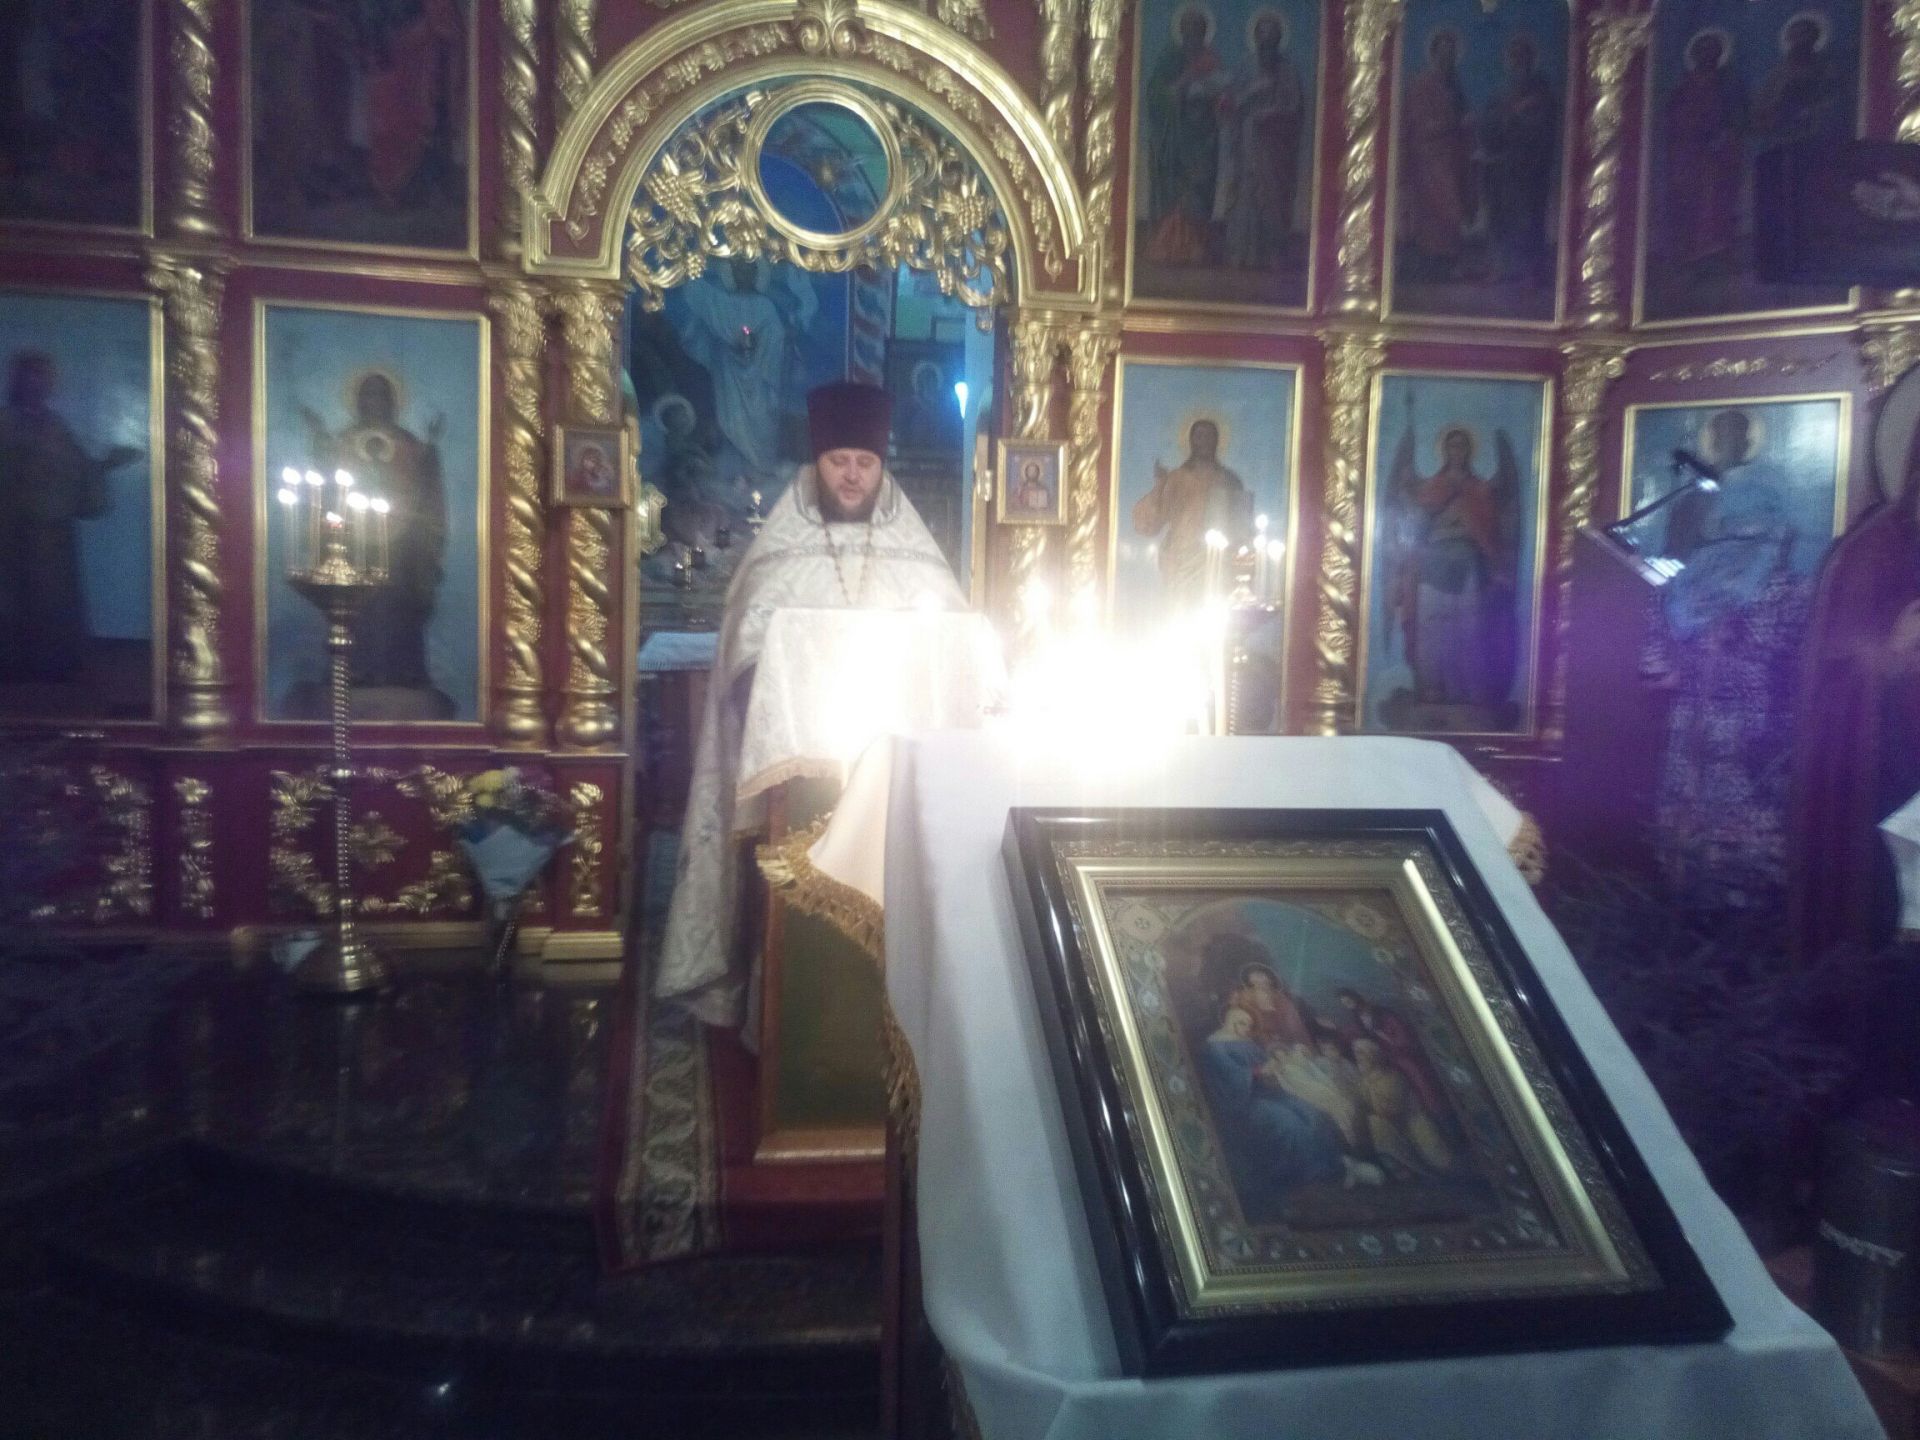 Фото: православные христиане Мамадышского района празднуют Рождество